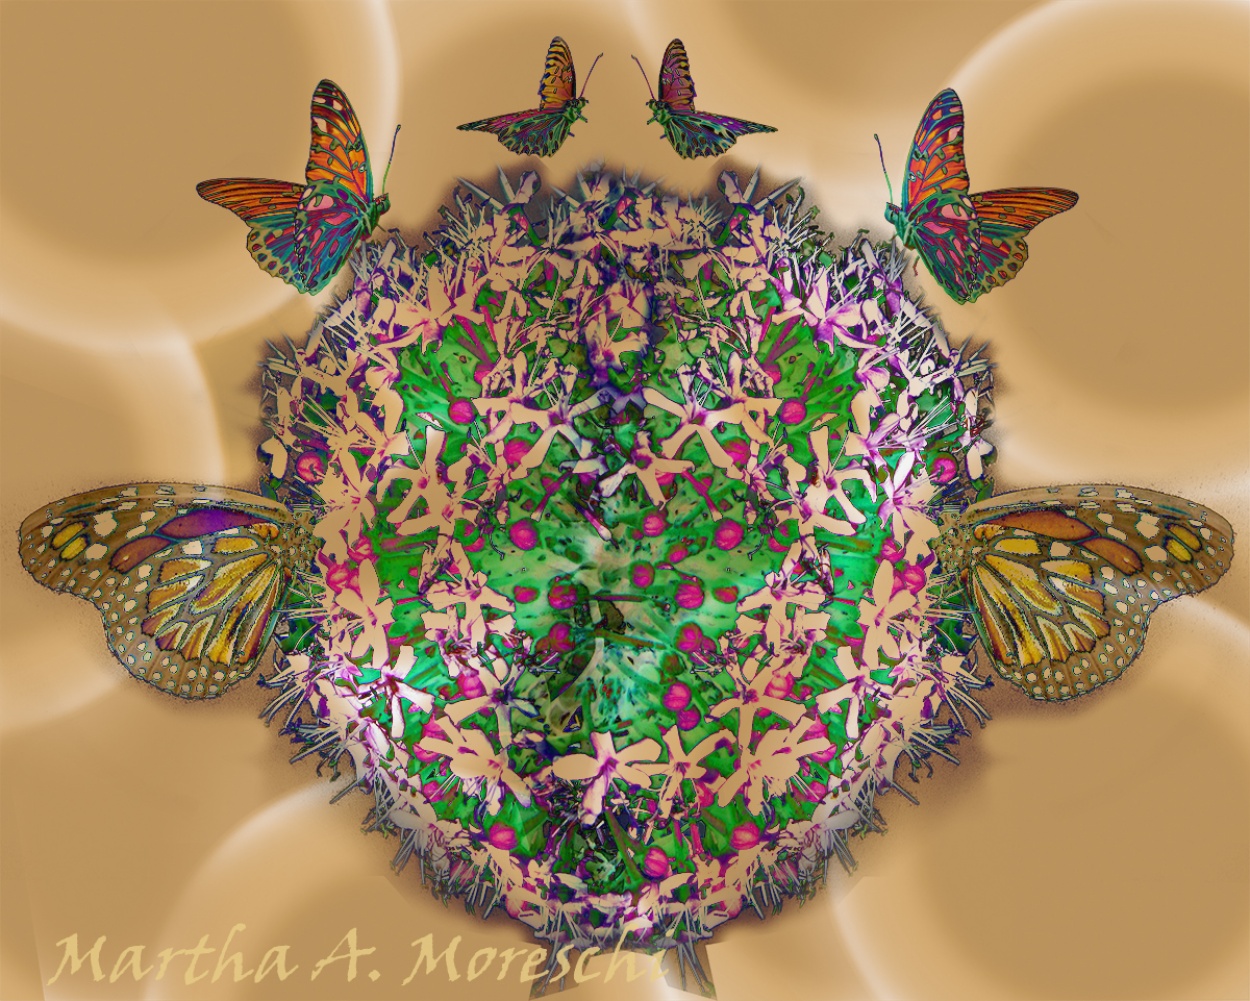 "Mundo mariposa" de Martha A. Moreschi